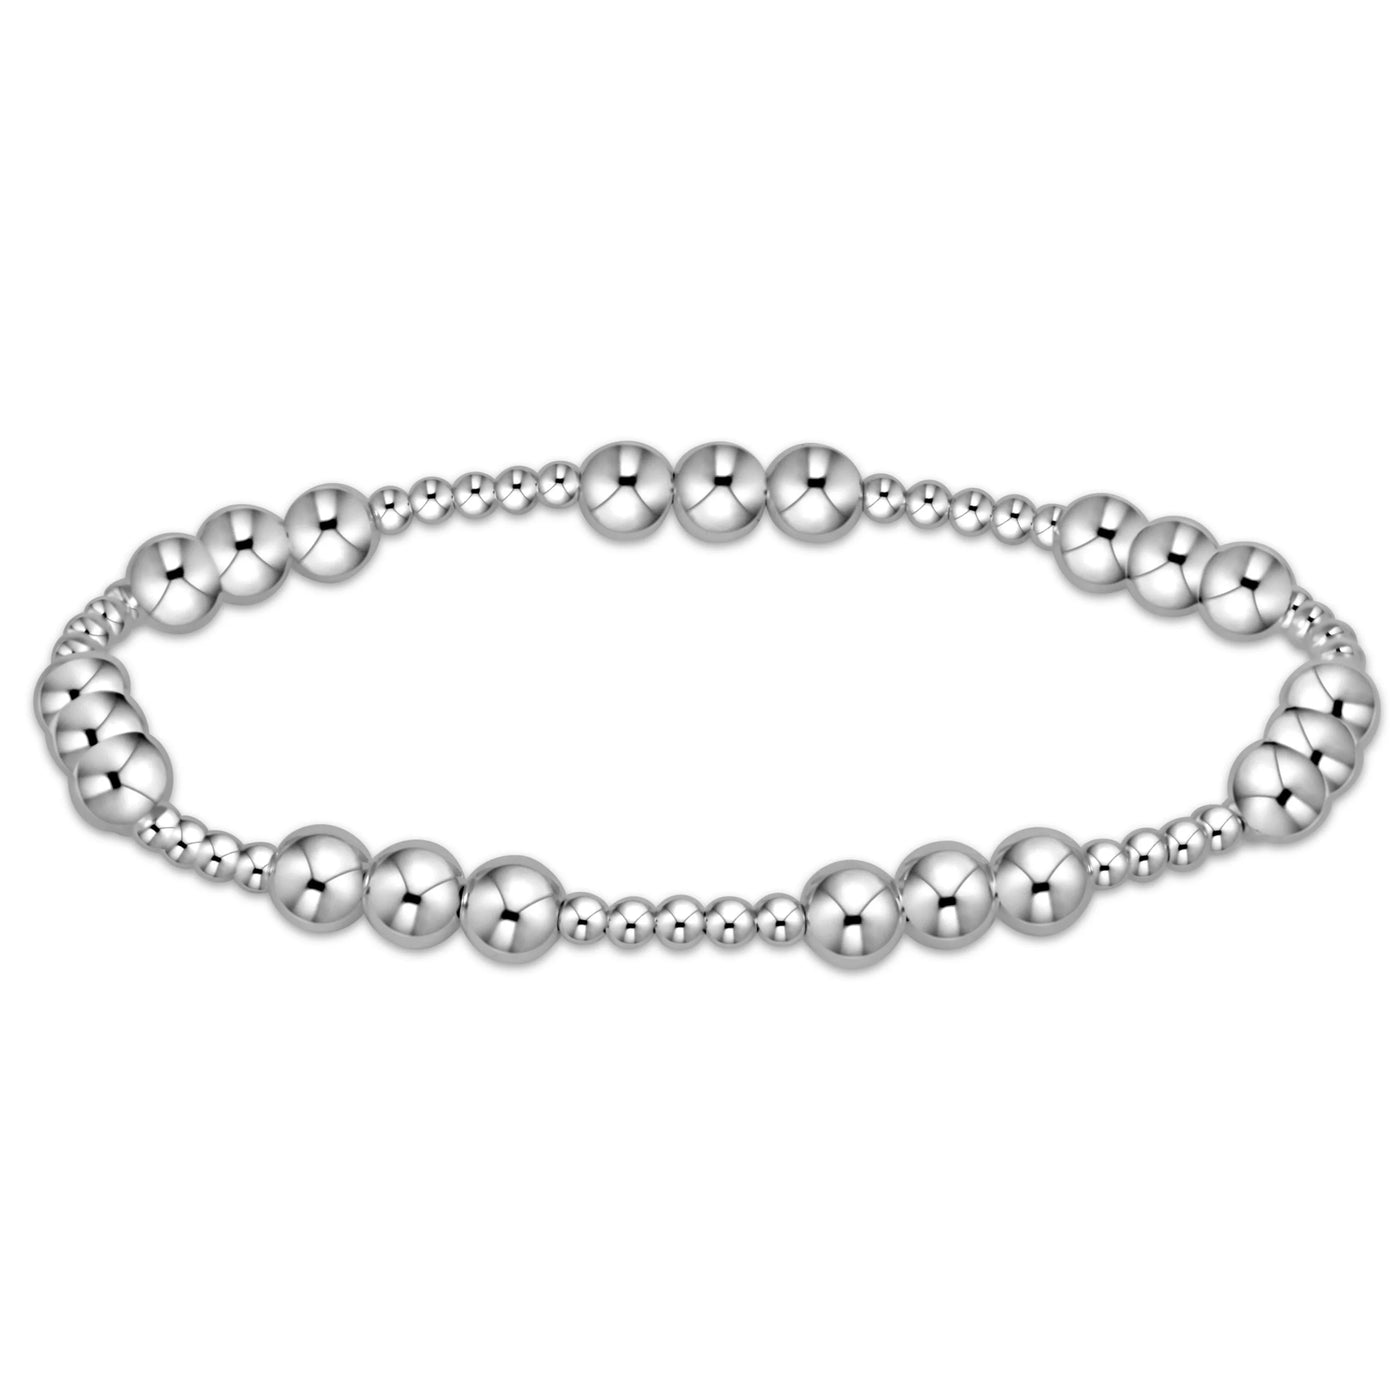 Enewton classic joy pattern 5mm bead bracelet - sterling